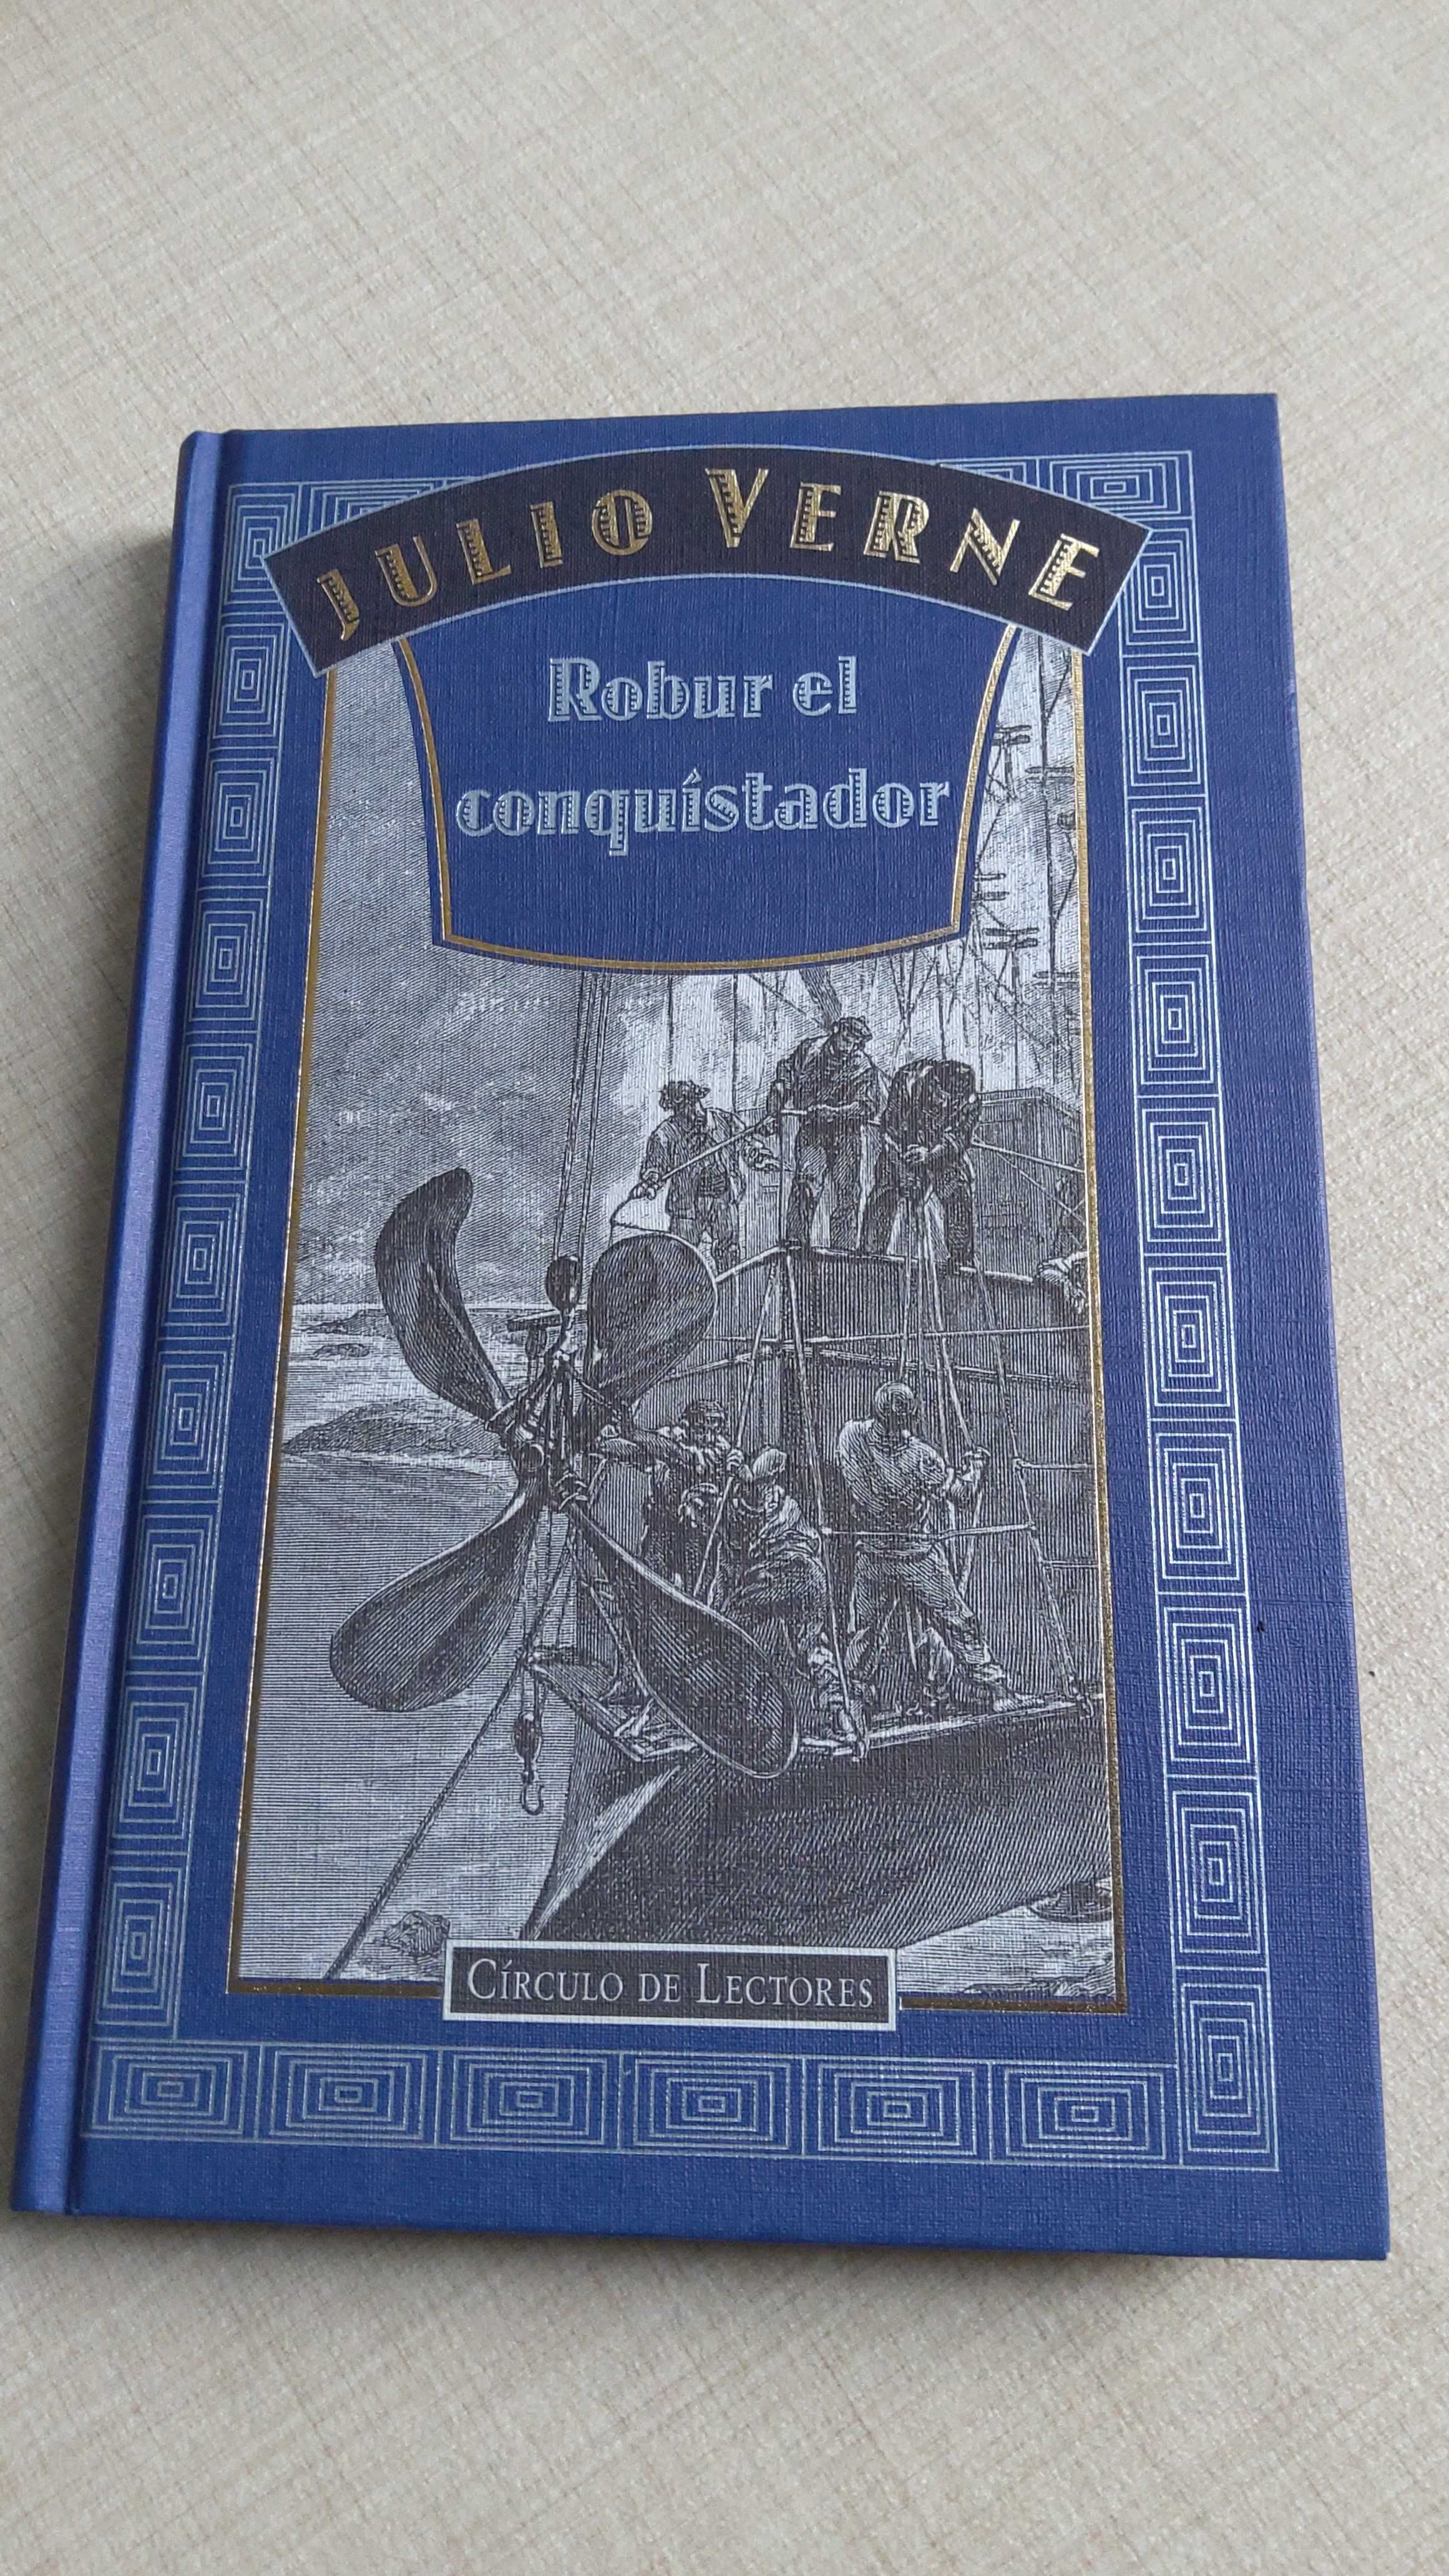 Julio Verne Robur el conquistador hiszpański reprint oryginalnego wyd.